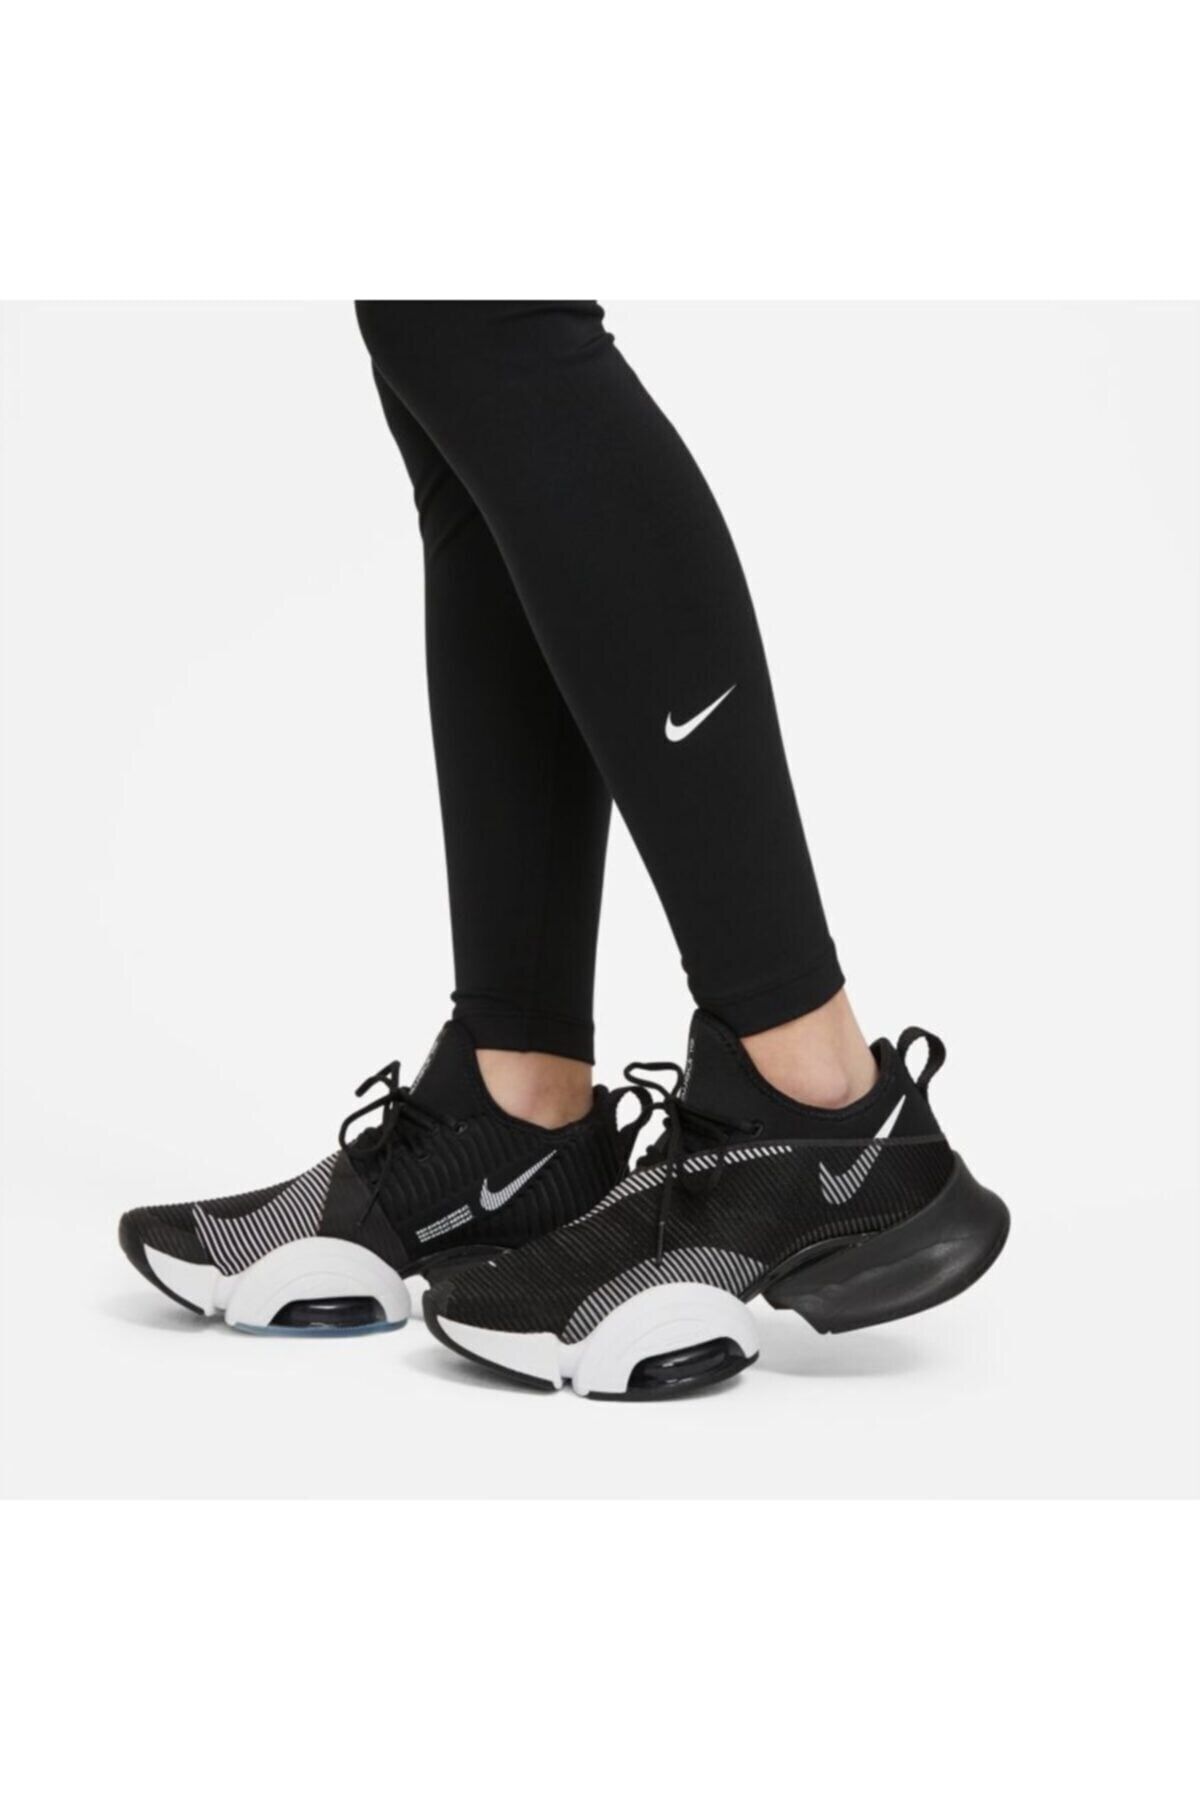 Nike One Dri-Fit Siyah Kadın Tayt DD0252-010 Fiyatları, Özellikleri ve  Yorumları